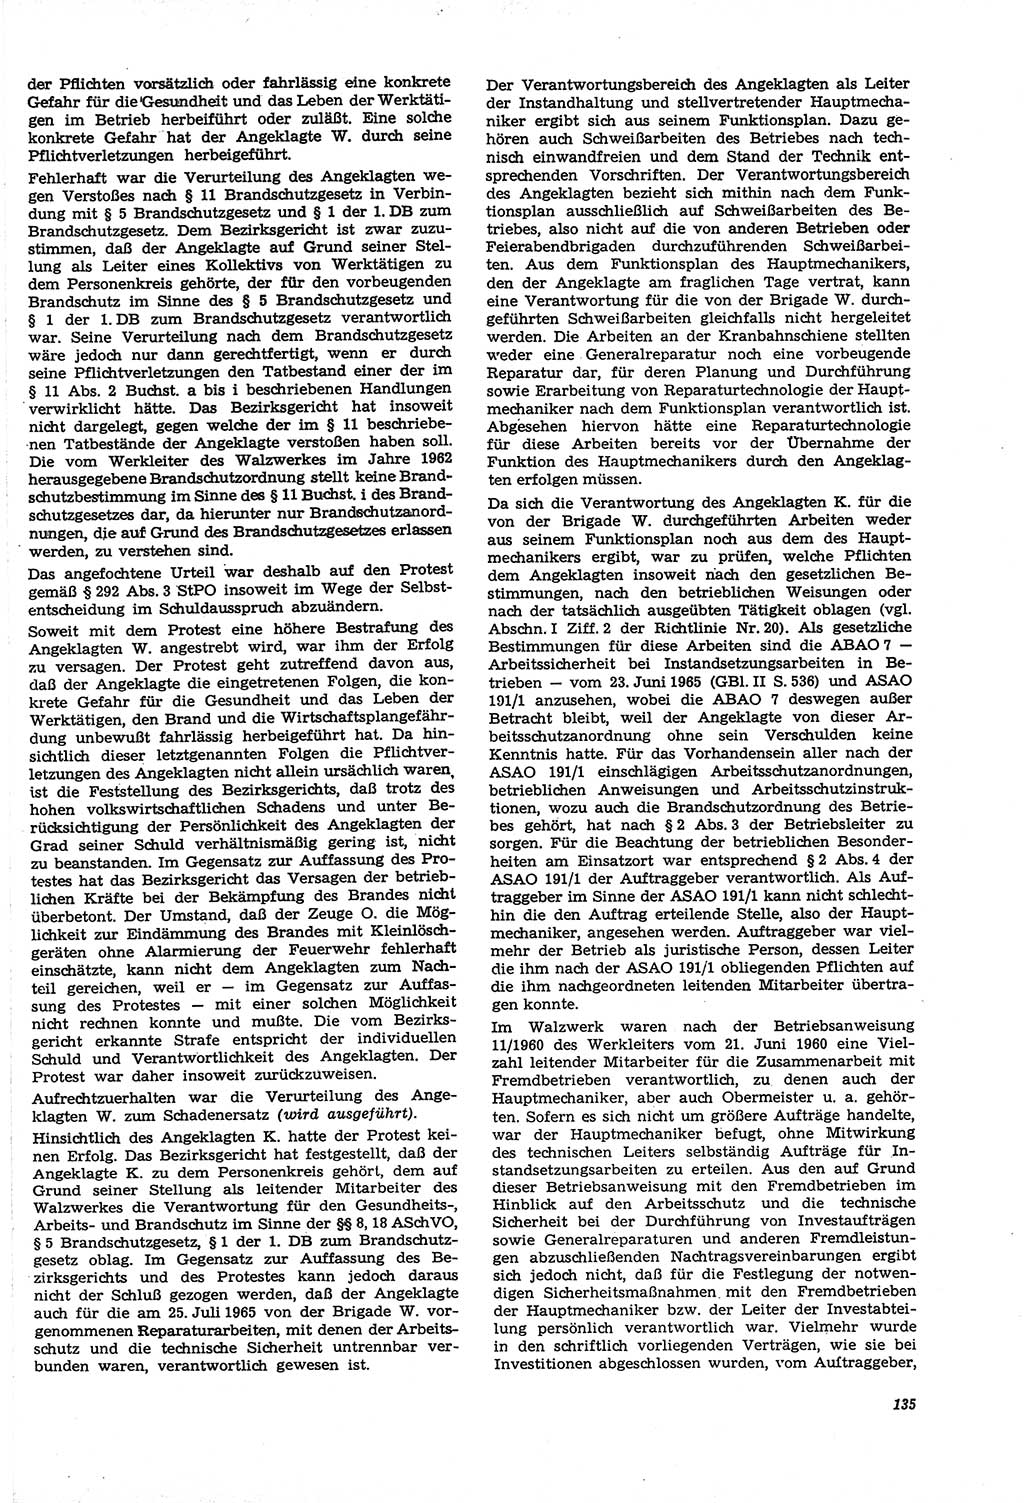 Neue Justiz (NJ), Zeitschrift für Recht und Rechtswissenschaft [Deutsche Demokratische Republik (DDR)], 21. Jahrgang 1967, Seite 135 (NJ DDR 1967, S. 135)